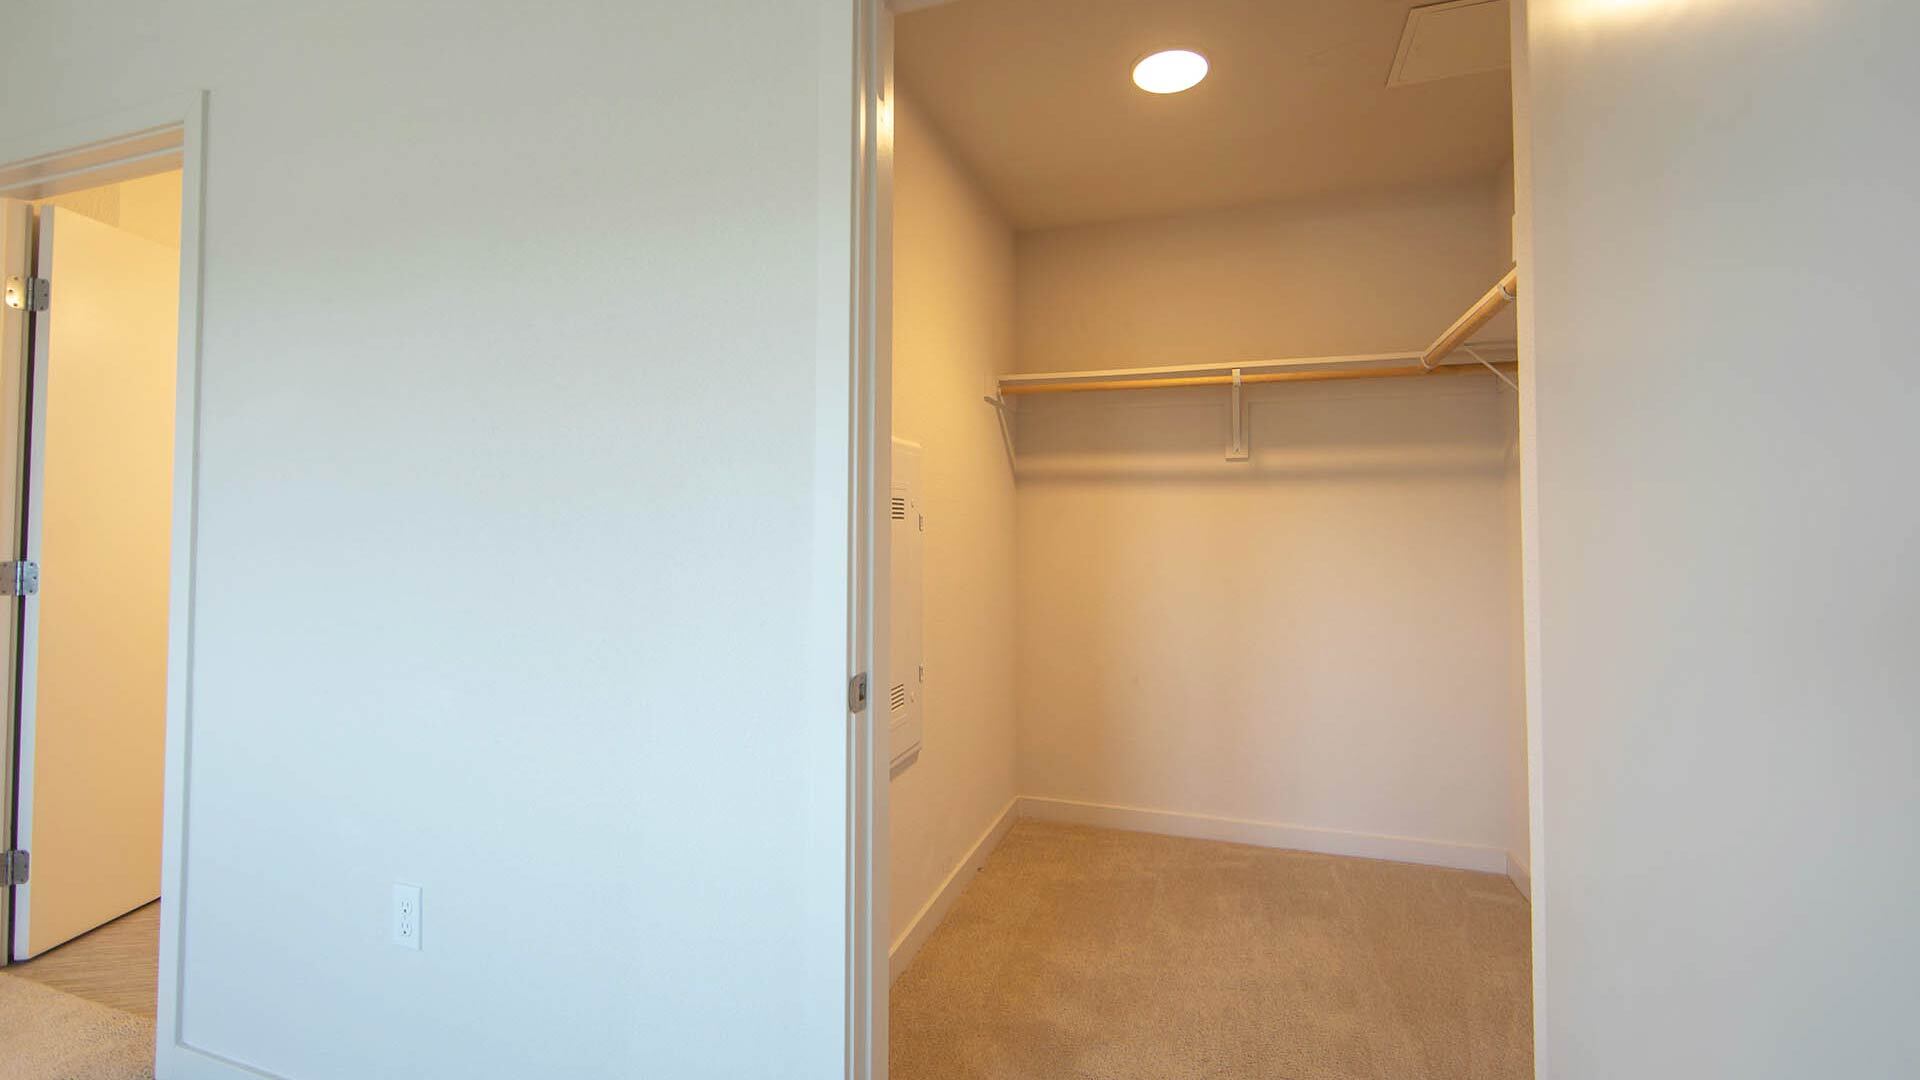 Aperture C4 floorplan bedroom closet view 2